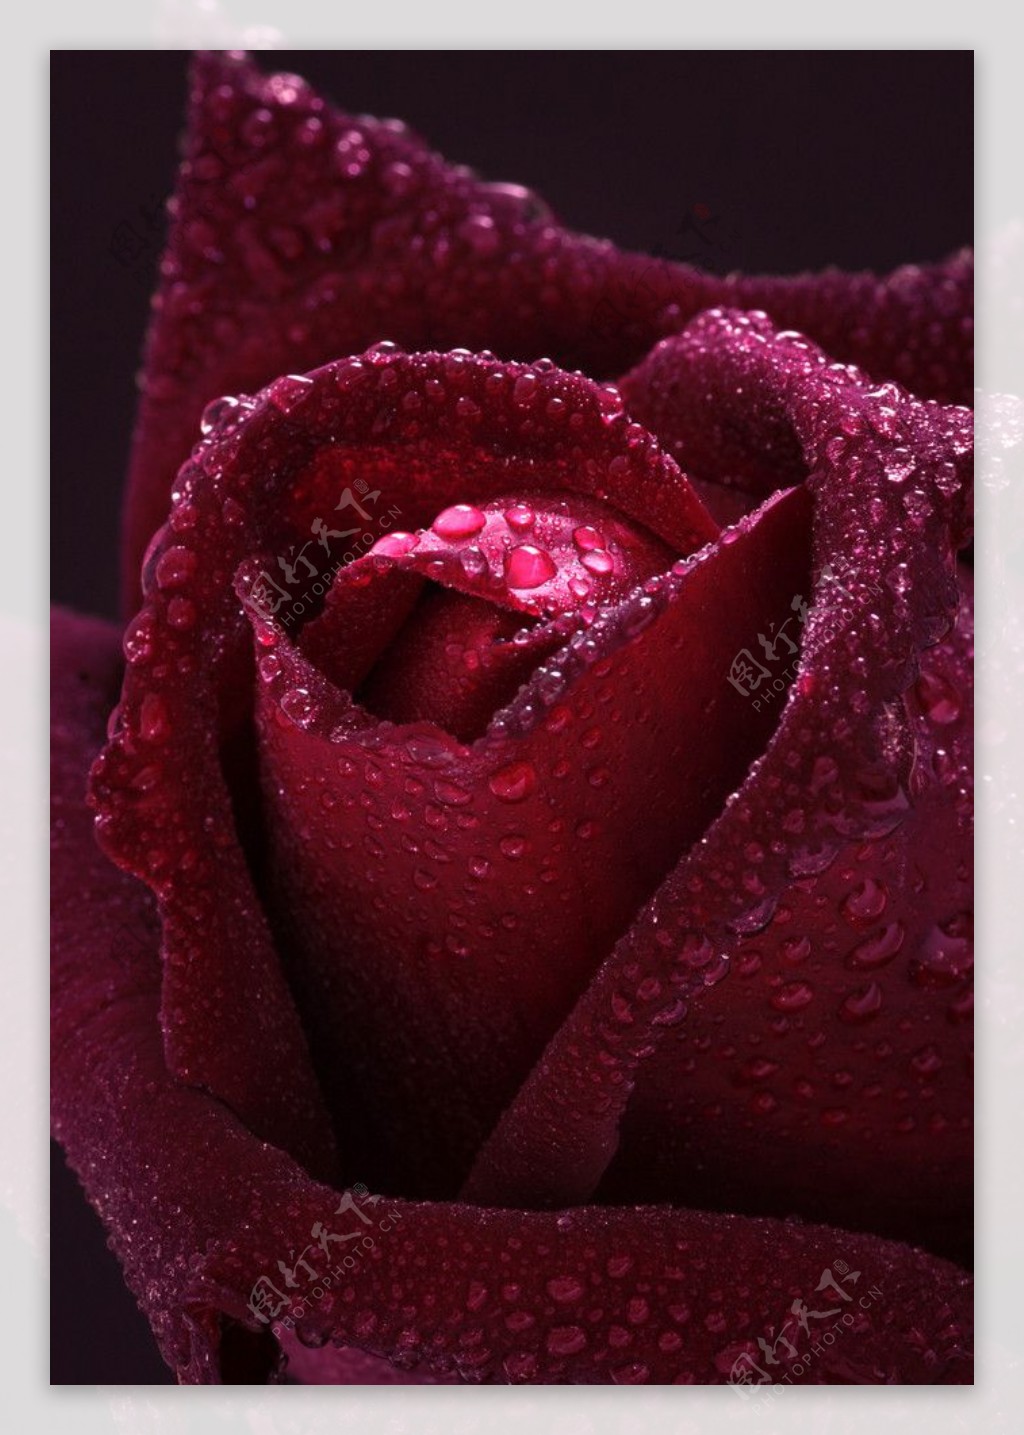 红玫瑰水滴水珠图片